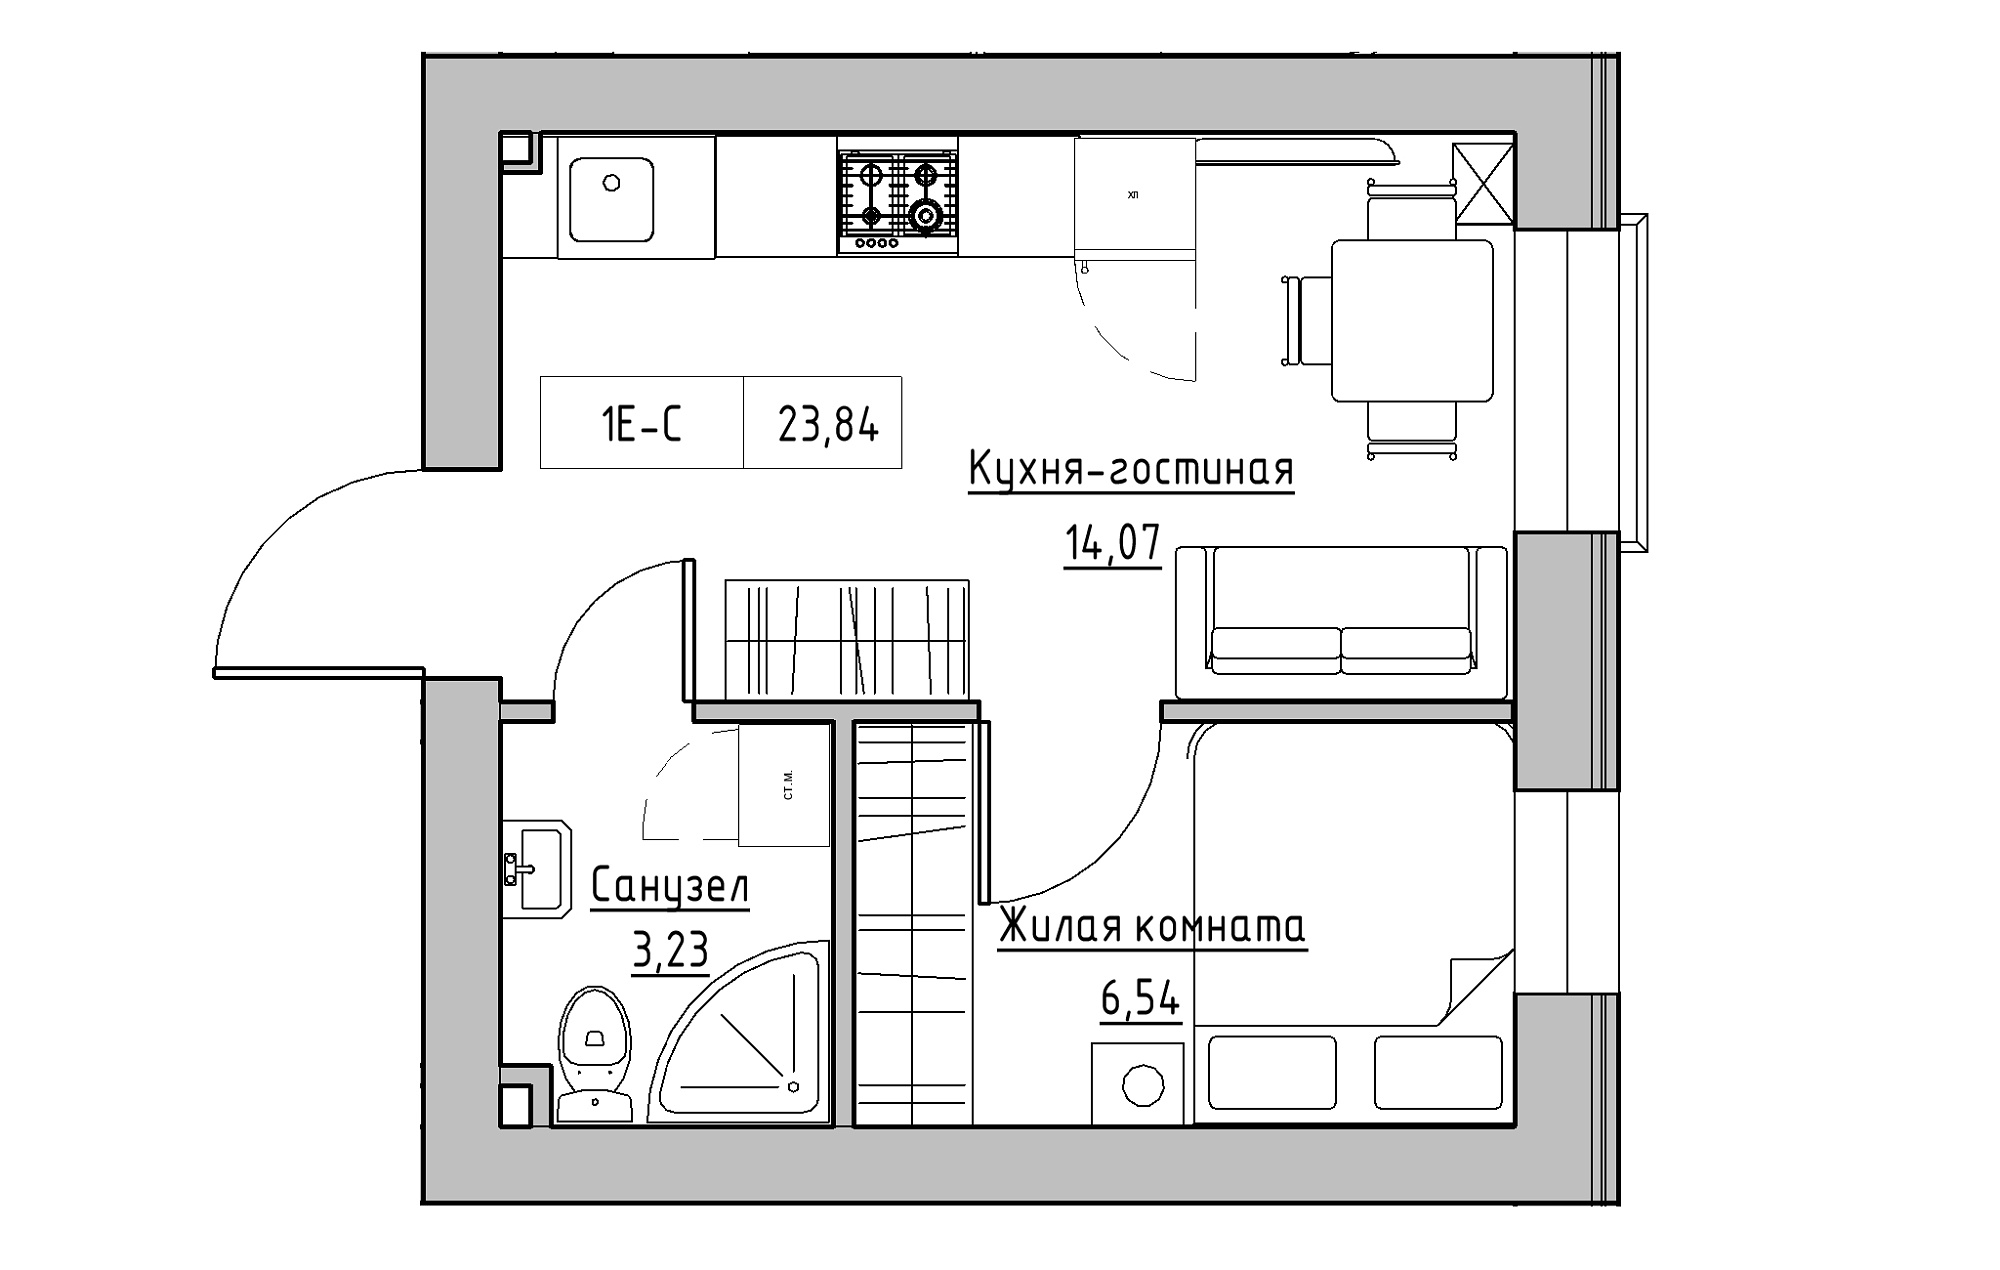 Планировка 1-к квартира площей 23.84м2, KS-018-04/0011.